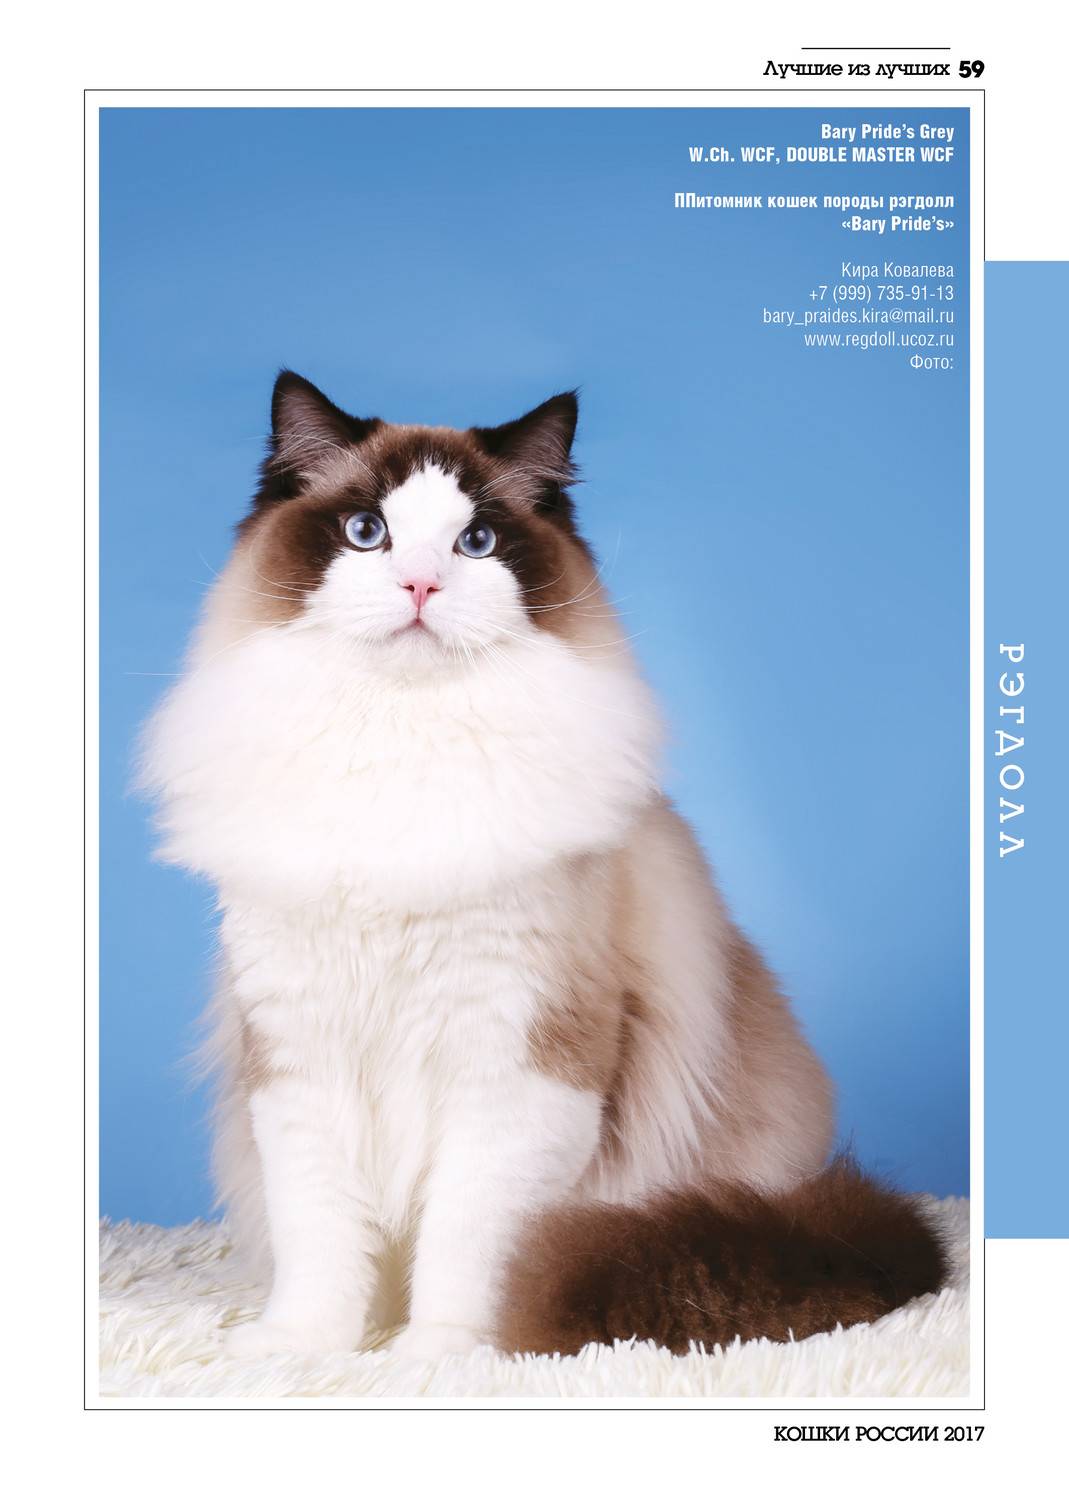 Рэгдолл кошка: описание породы и характера, особенности ухода, содержания, кормления